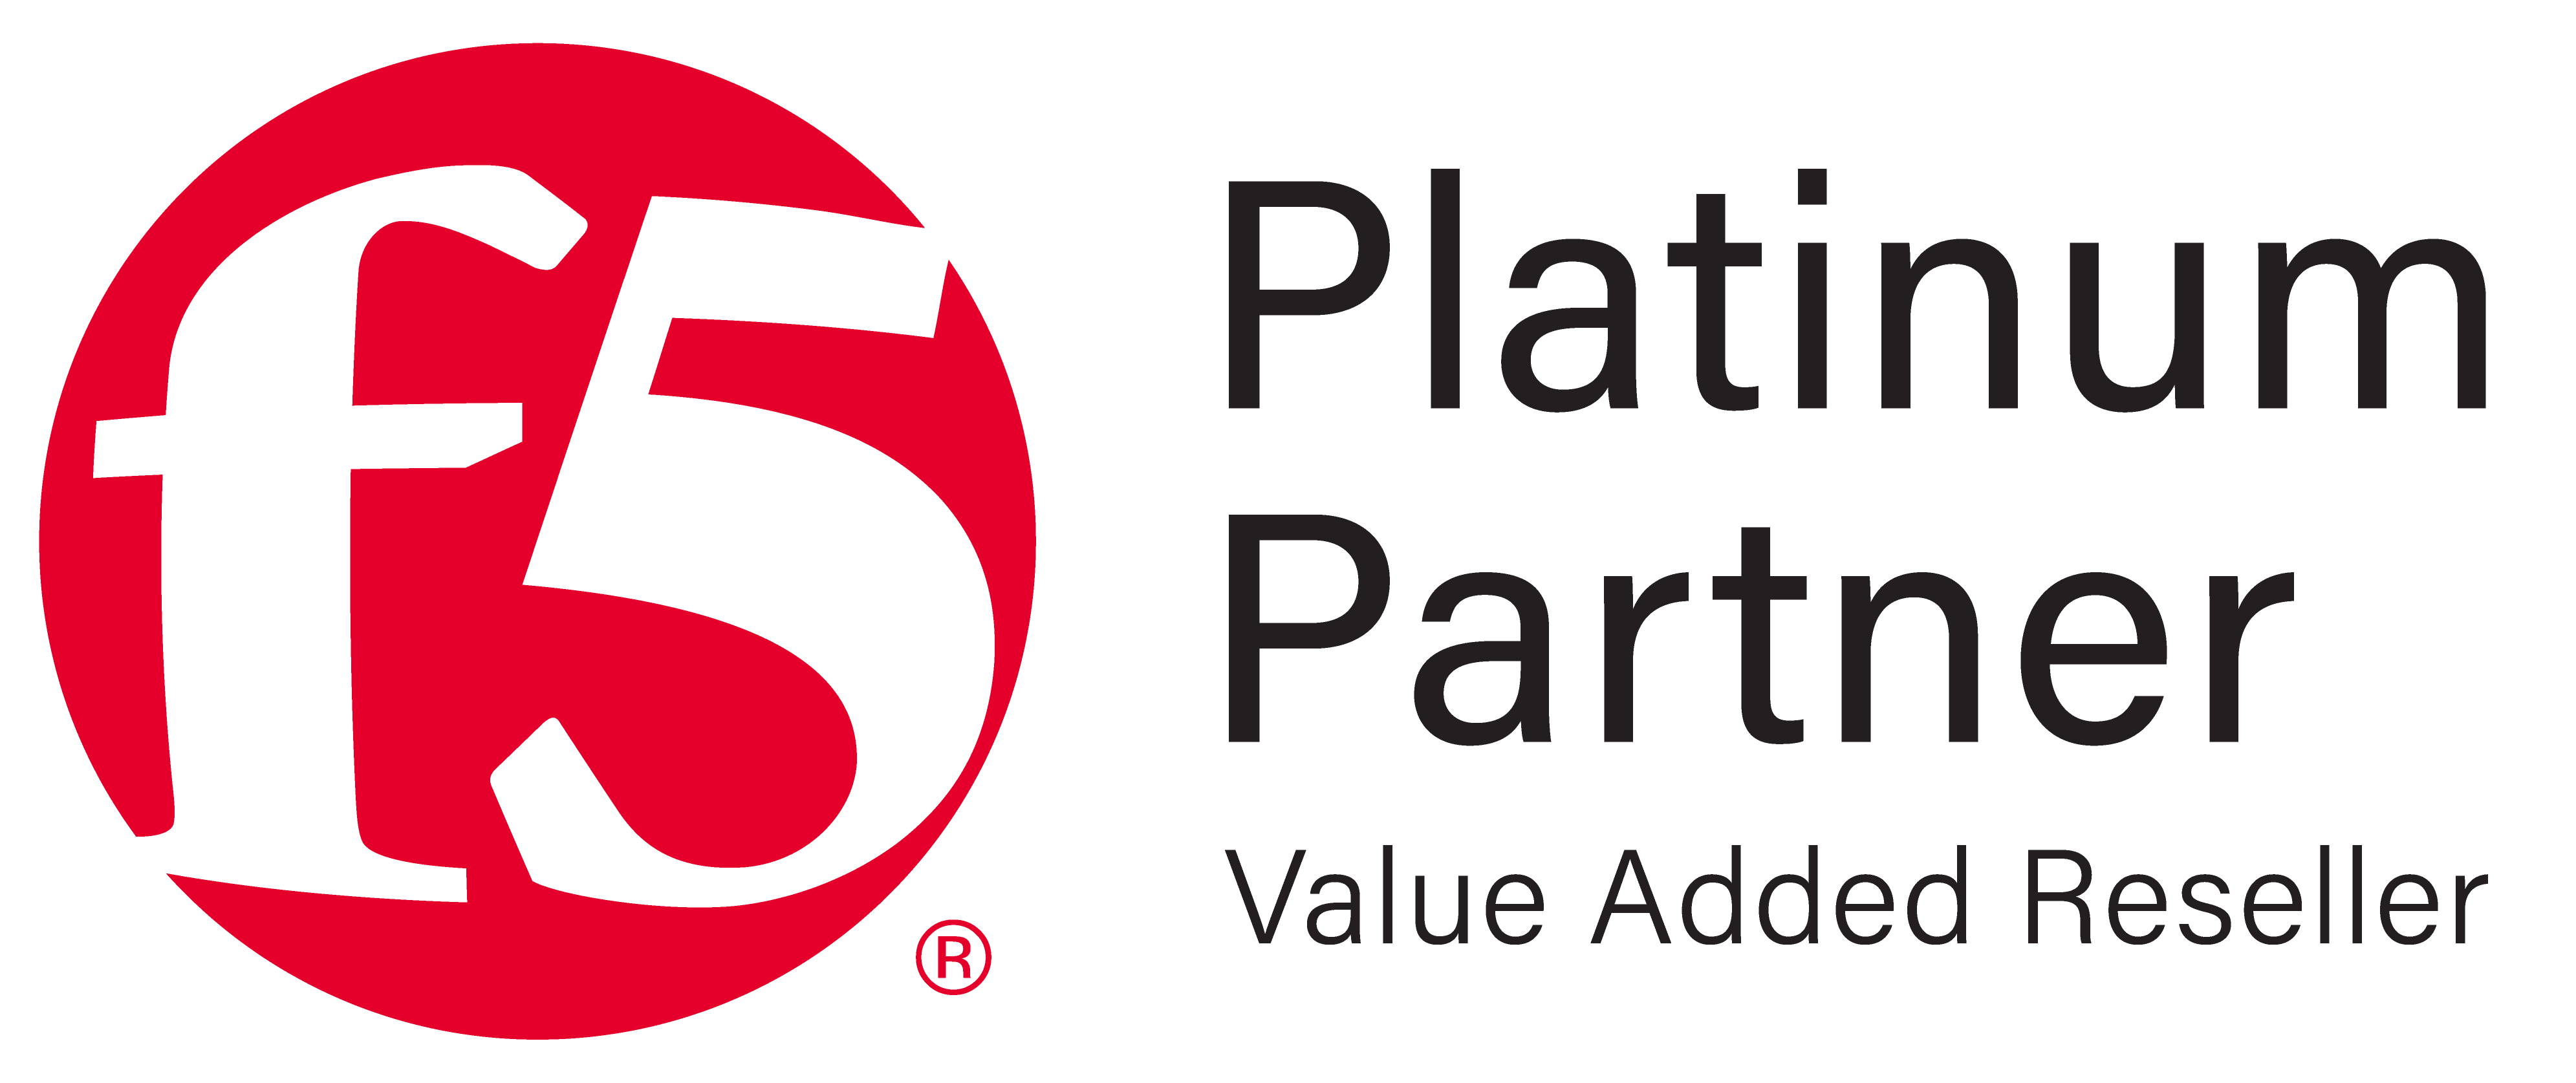 F5 Platinum Partner